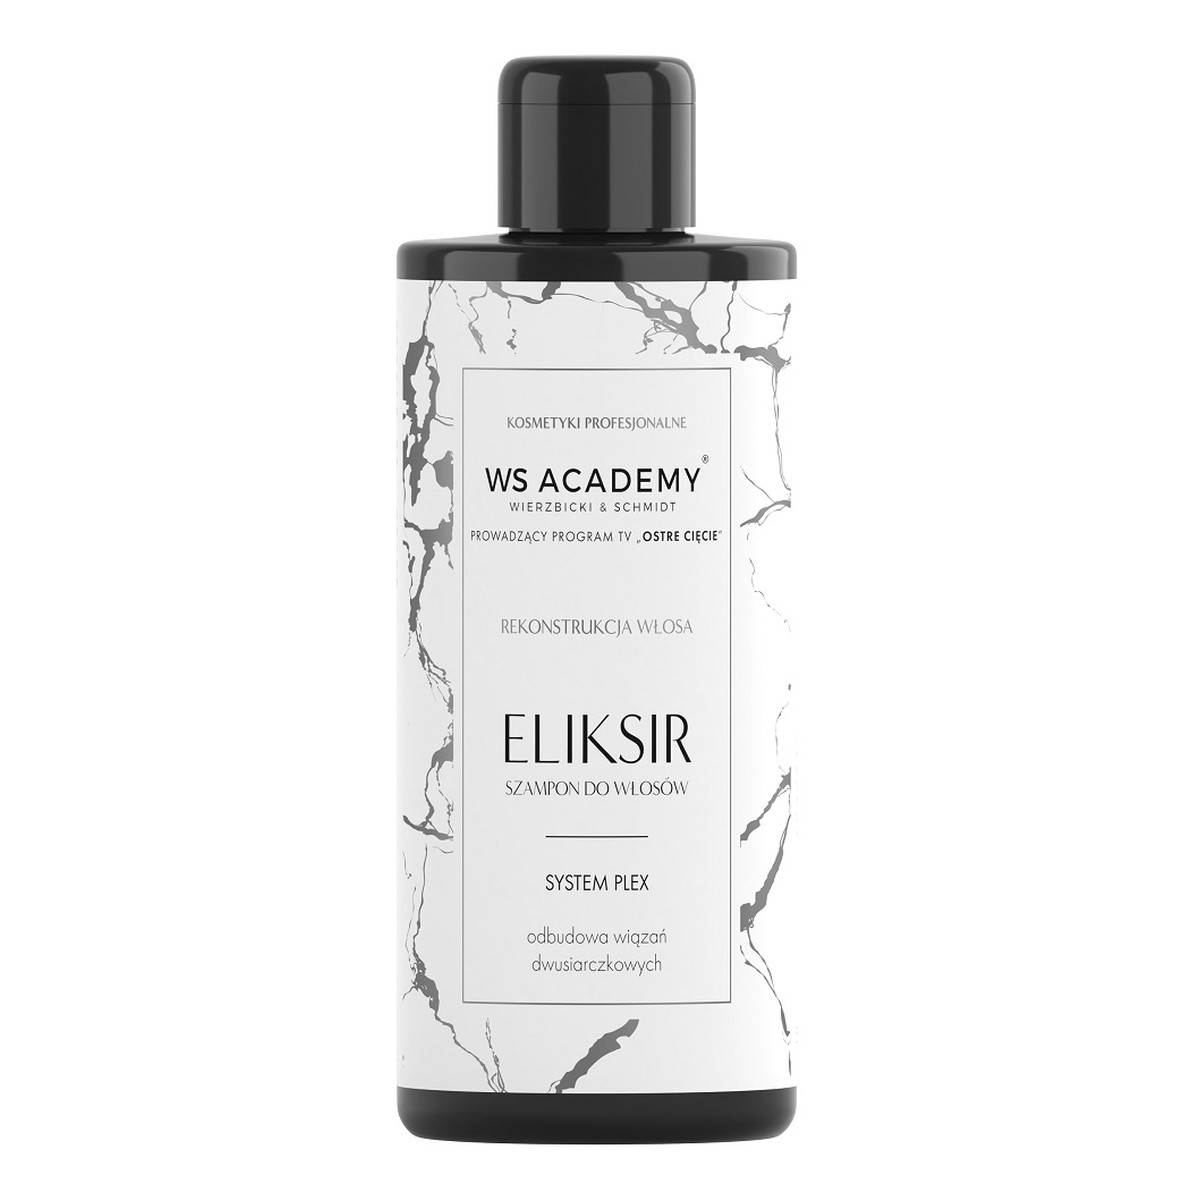 WS Academy Eliksir szampon do włosów system plex 250ml